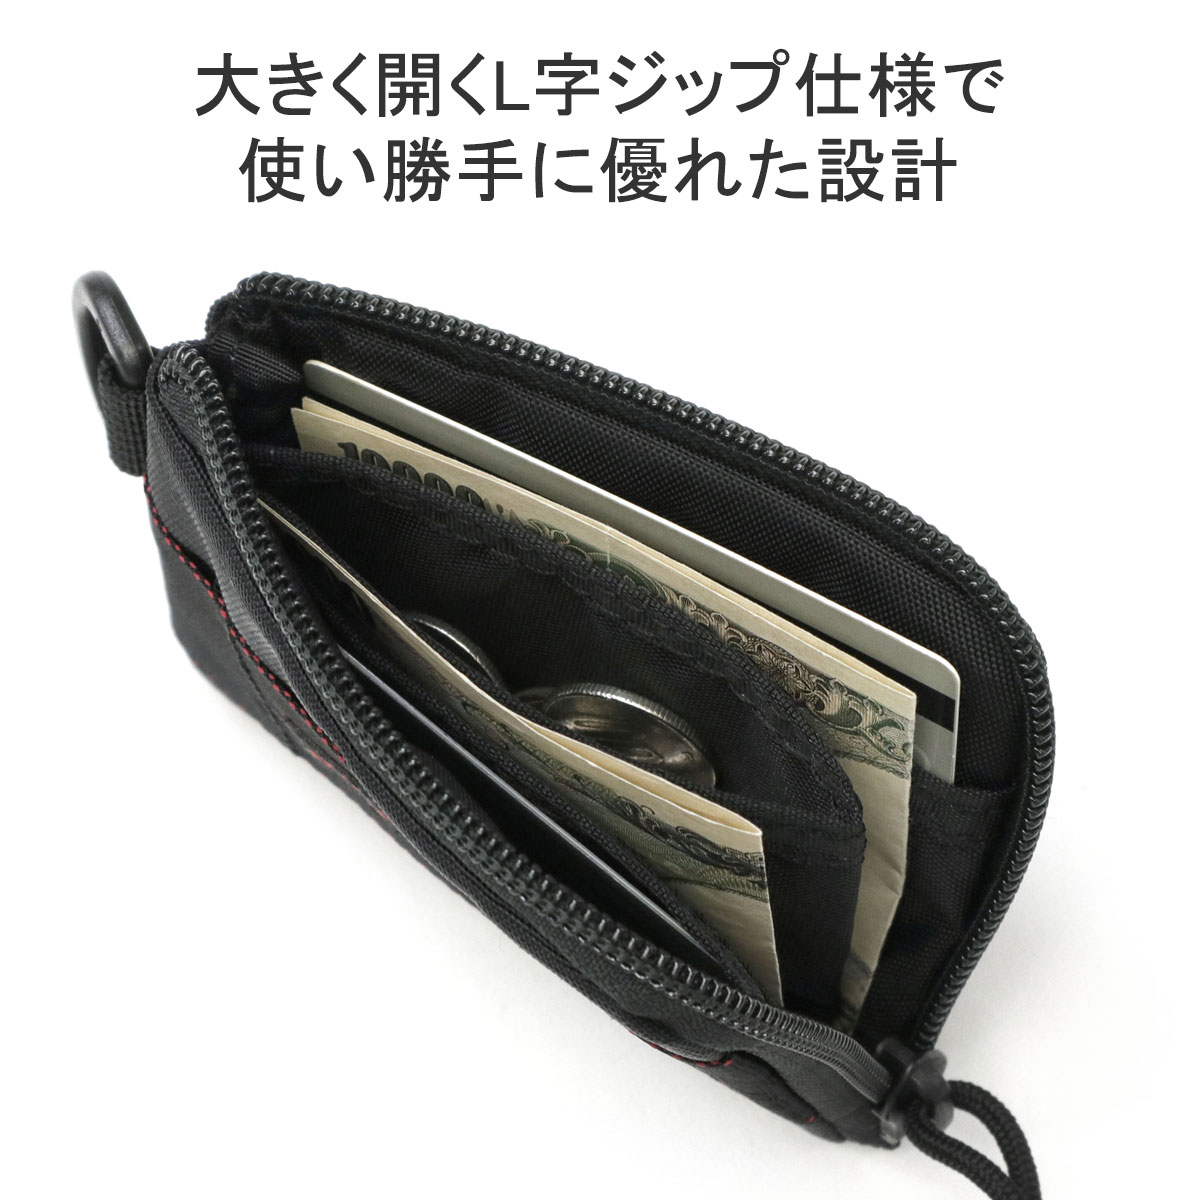 日本正規品 ブリーフィング 財布 メンズ レディース ブランド 